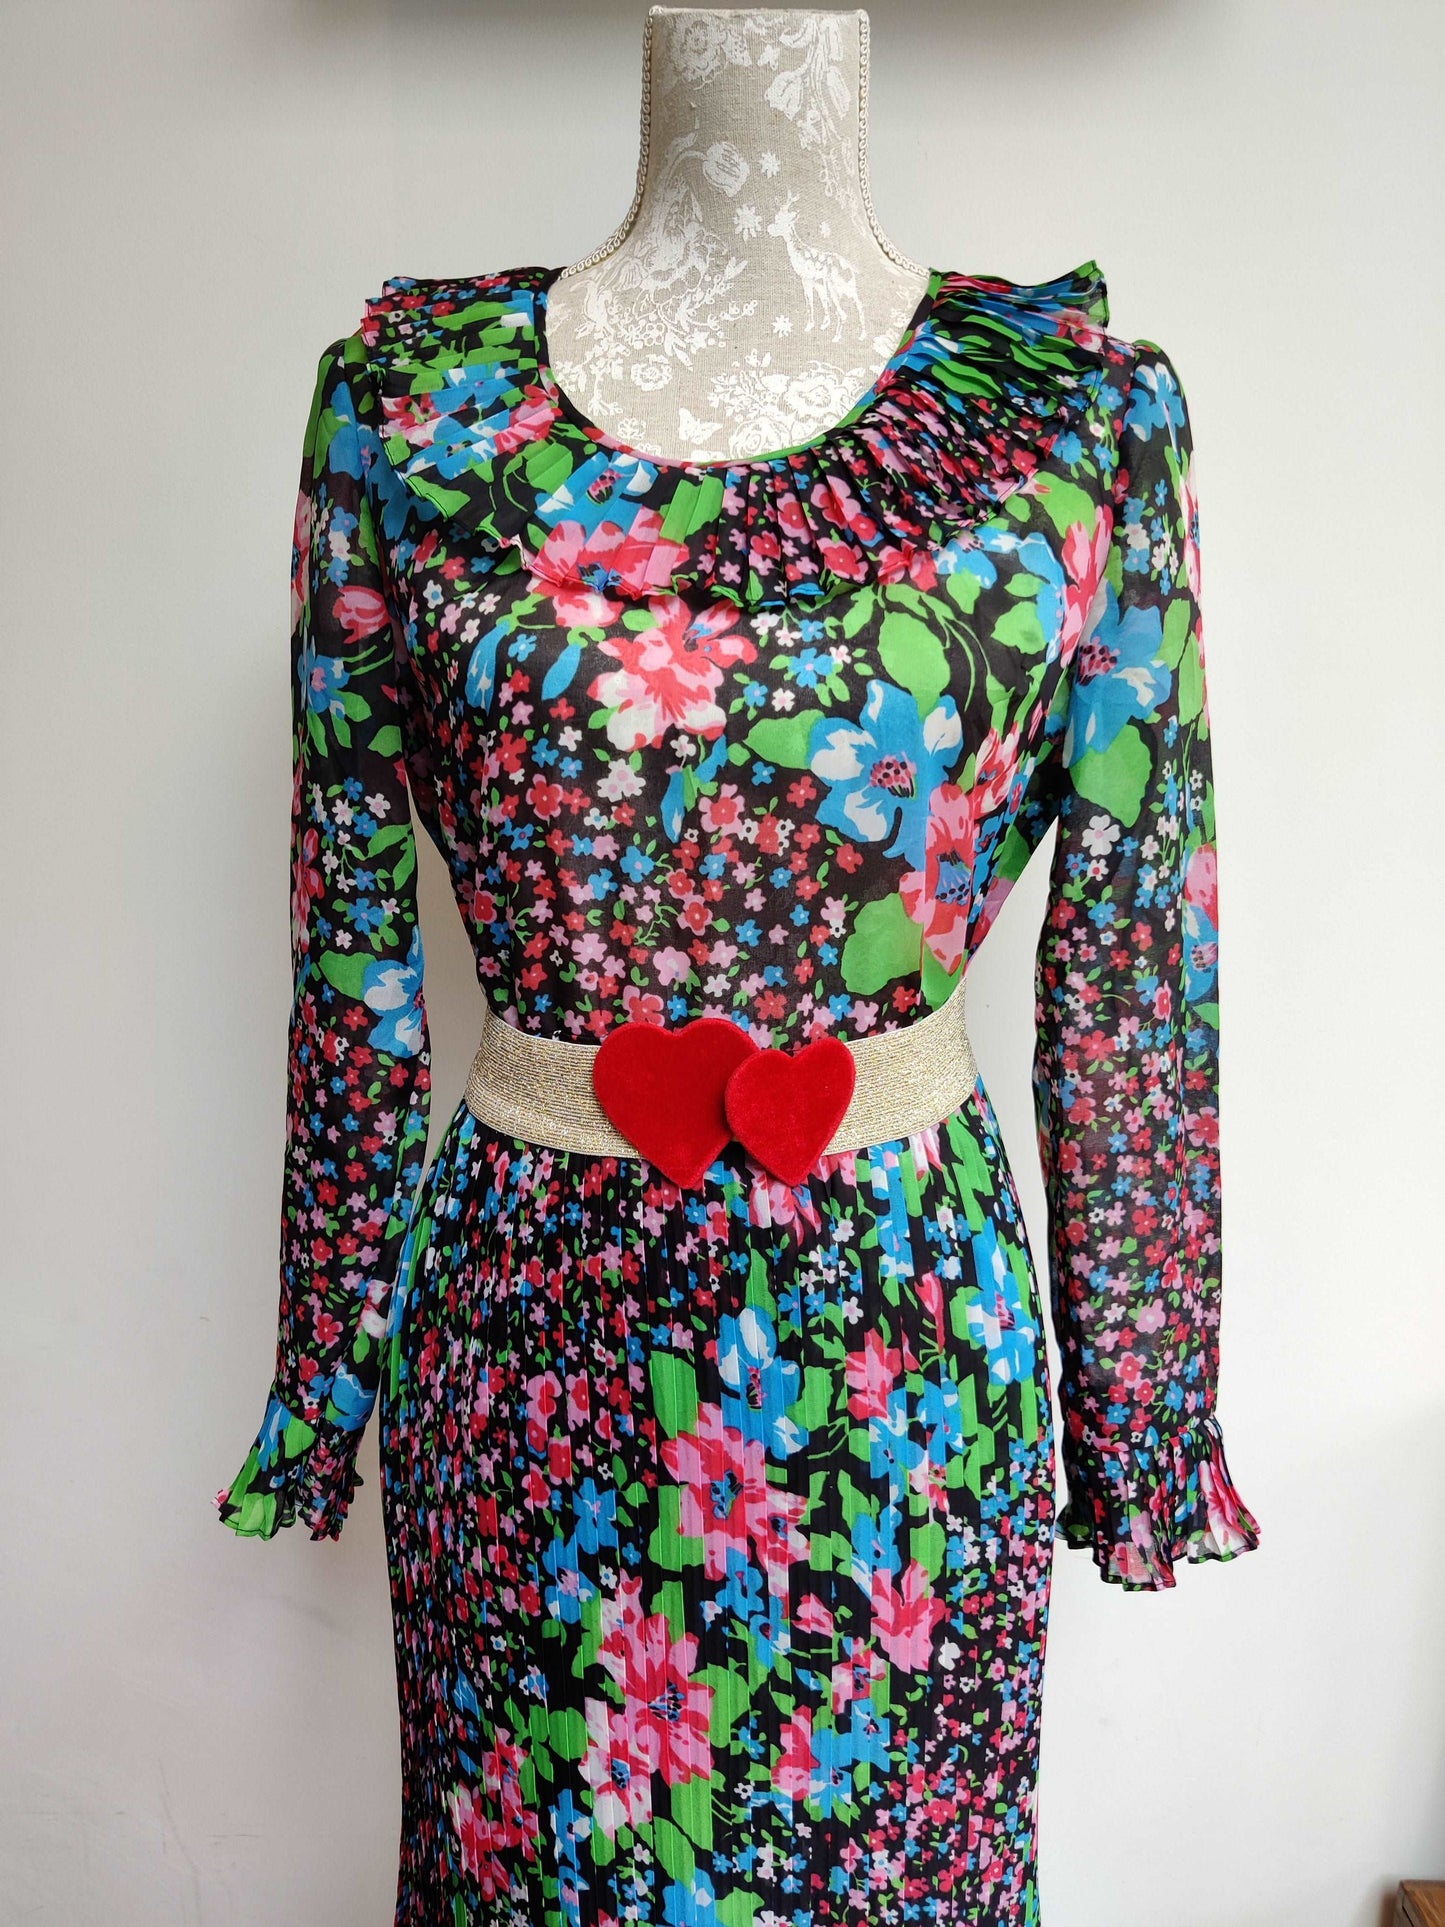 Pleated vintage maxi dress. Rainbow floral